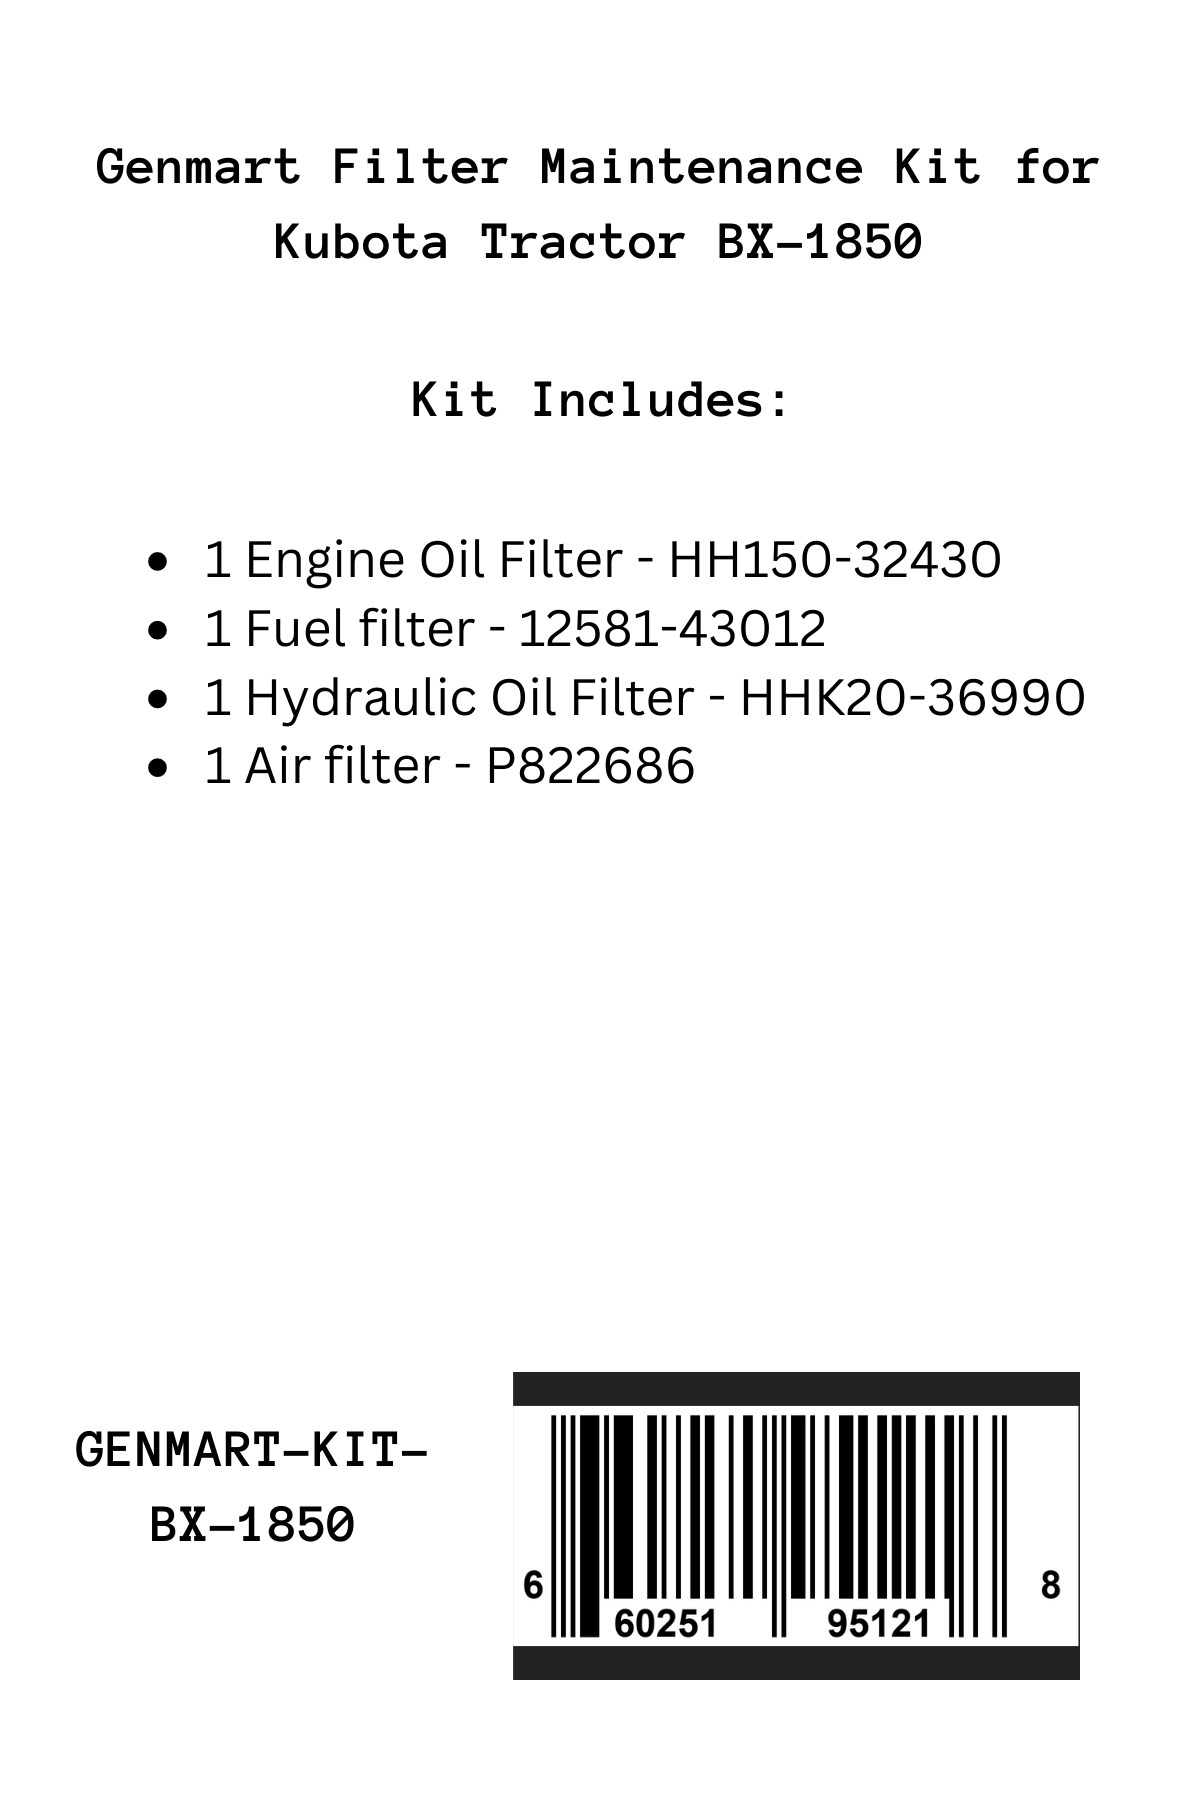 Genmart Maintenance Kit for Kubota Tractor BX-1850